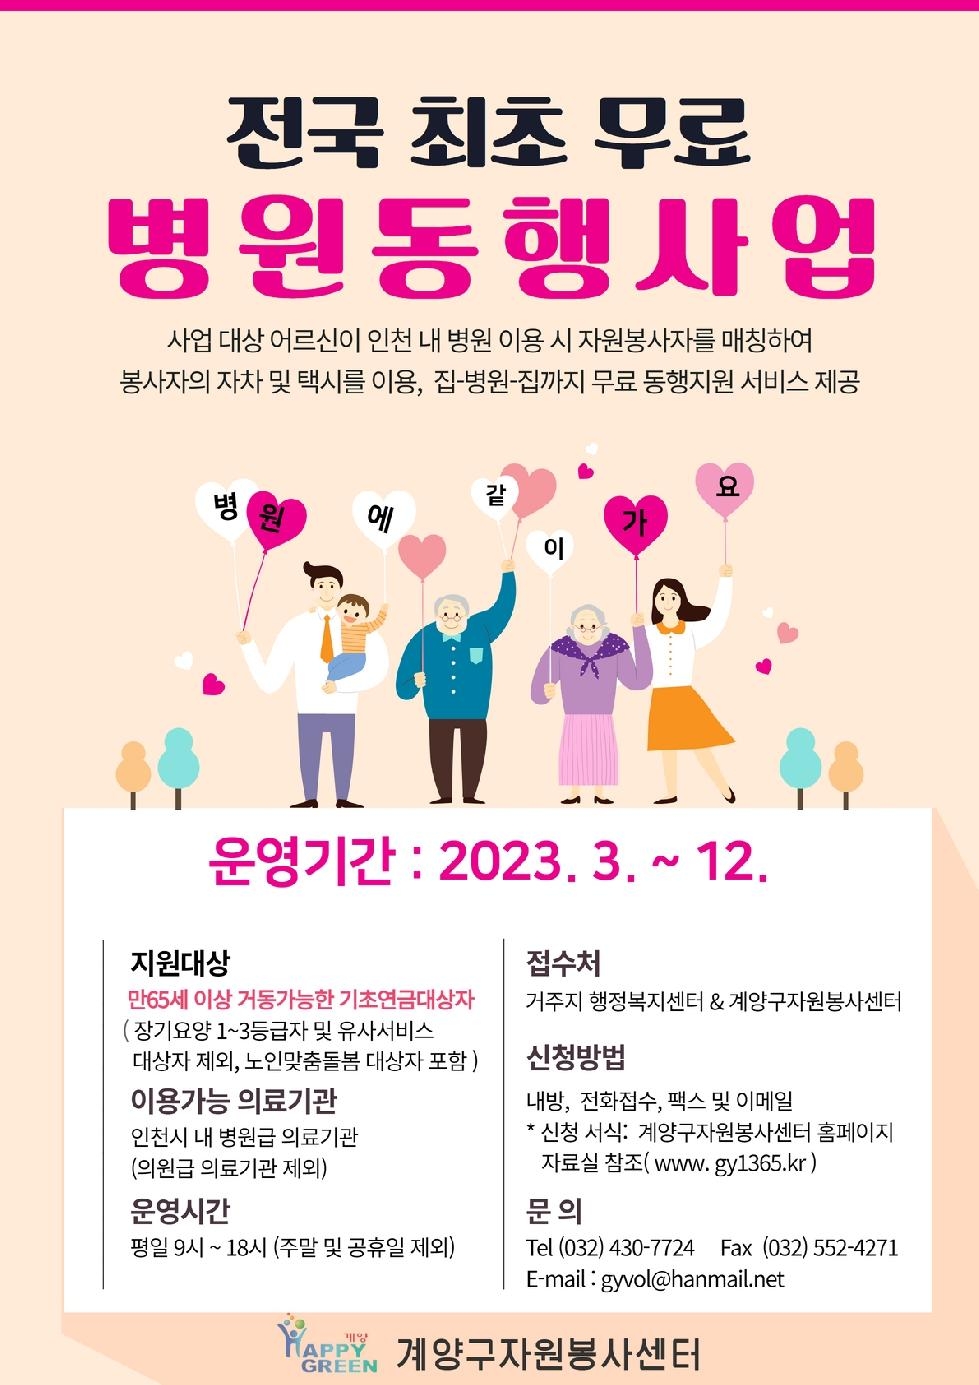 인천 계양구자원봉사센터, 2023년 자원봉사와 함께하는 병원동행사업 실시